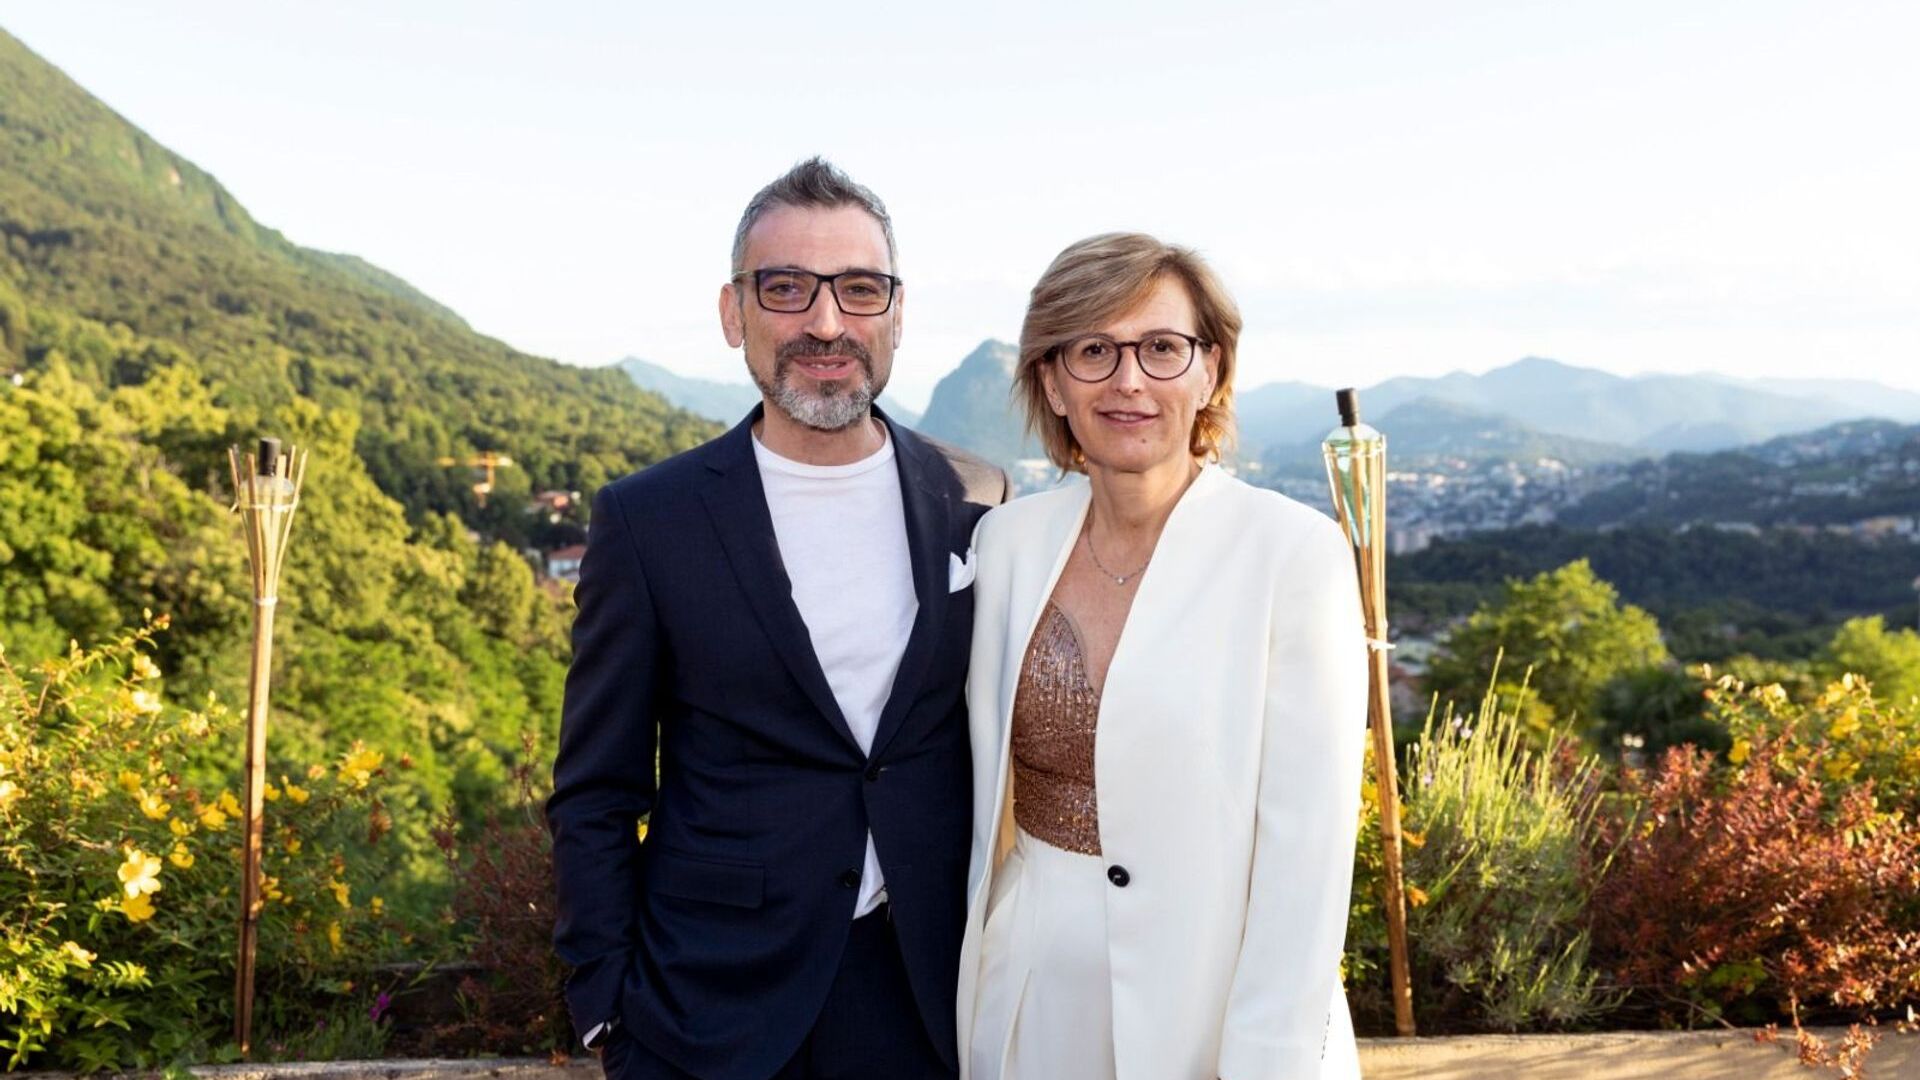 Cristina Giotto, præsident, og Luca Mauriello, vicepræsident, repræsenterer den nye topledelse i ated-ICT Ticino